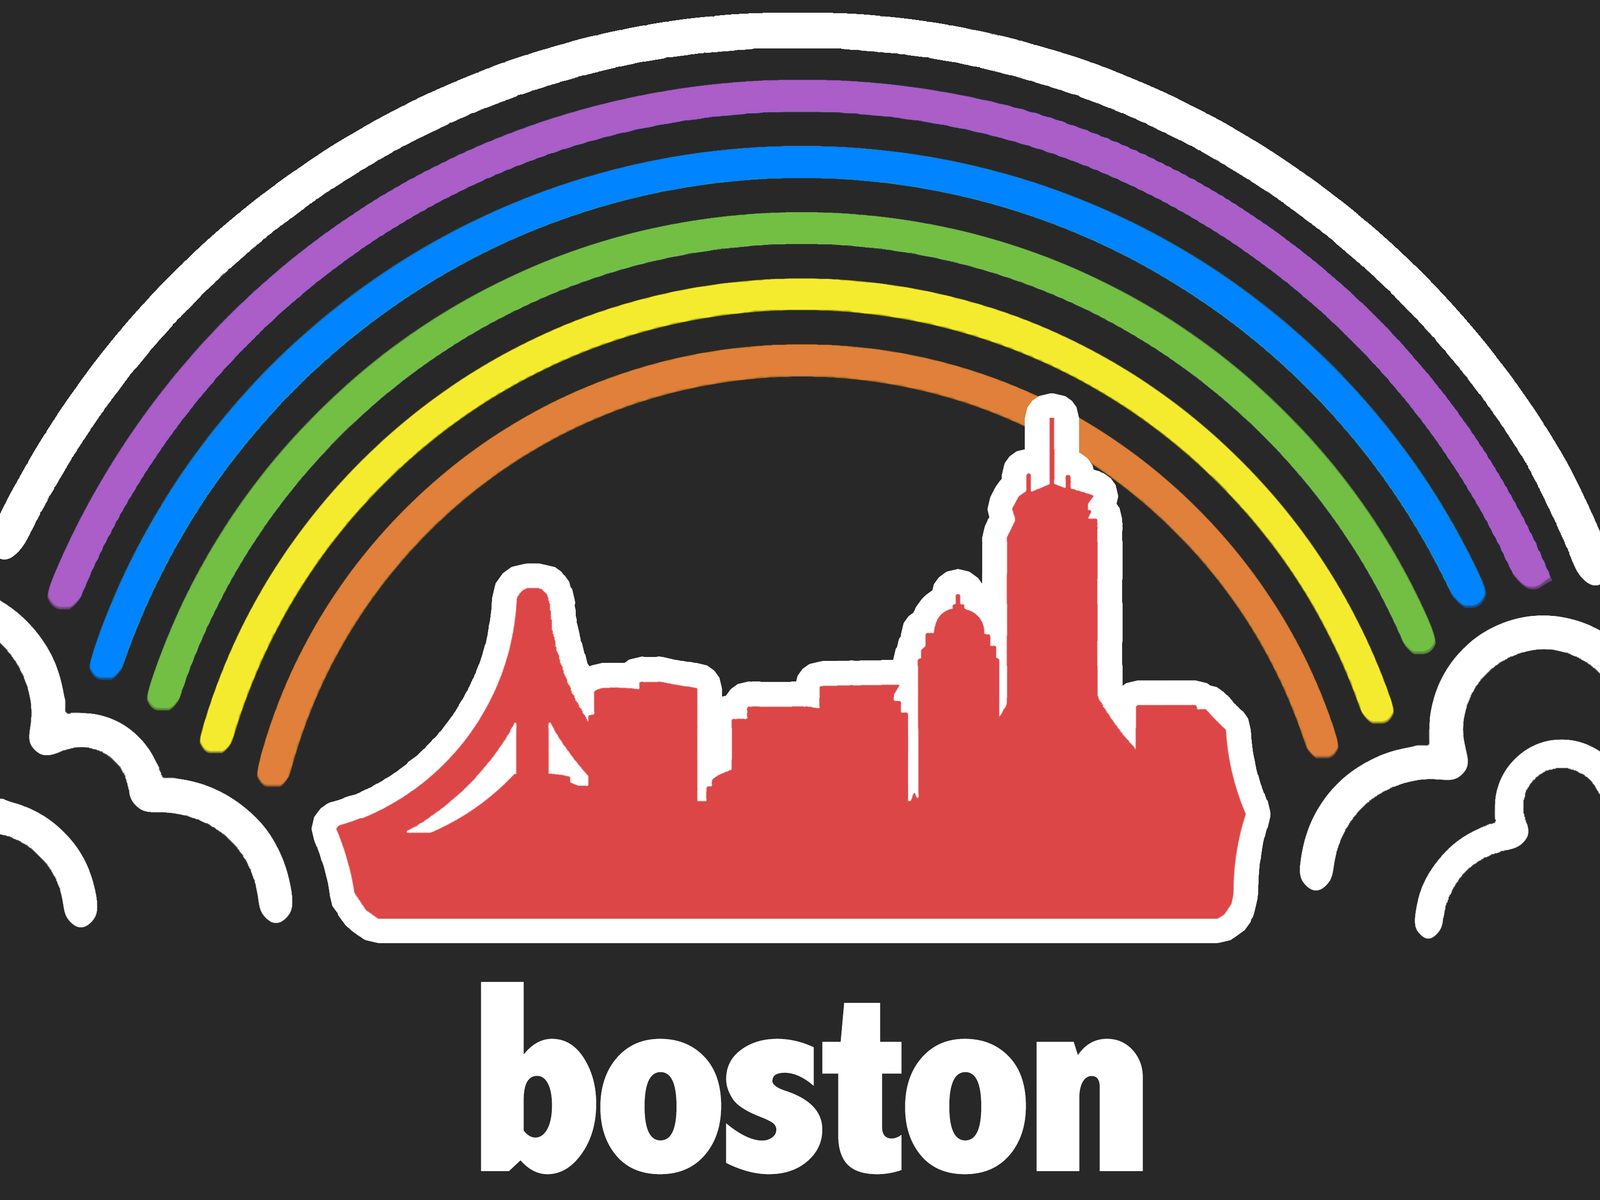 Boston Pride by Niemożliwe! on Dribbble